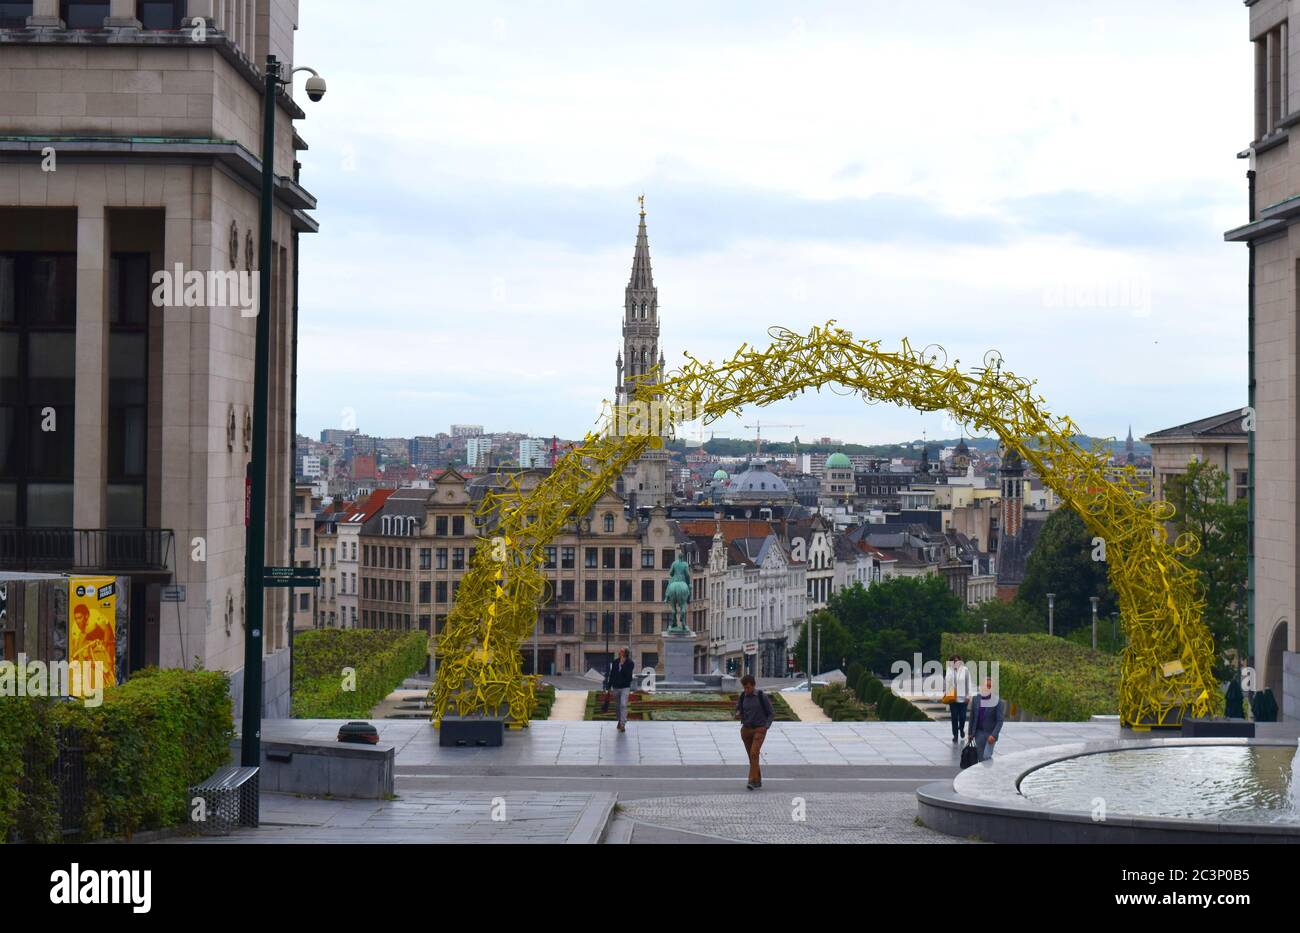 Bruxelles /Belgique - 8 juillet 2019 : paysage urbain de la place principale de Bruxelles. Belle vue panoramique sur la ville et l'Arche sur le Mont des Arts en jaune Banque D'Images